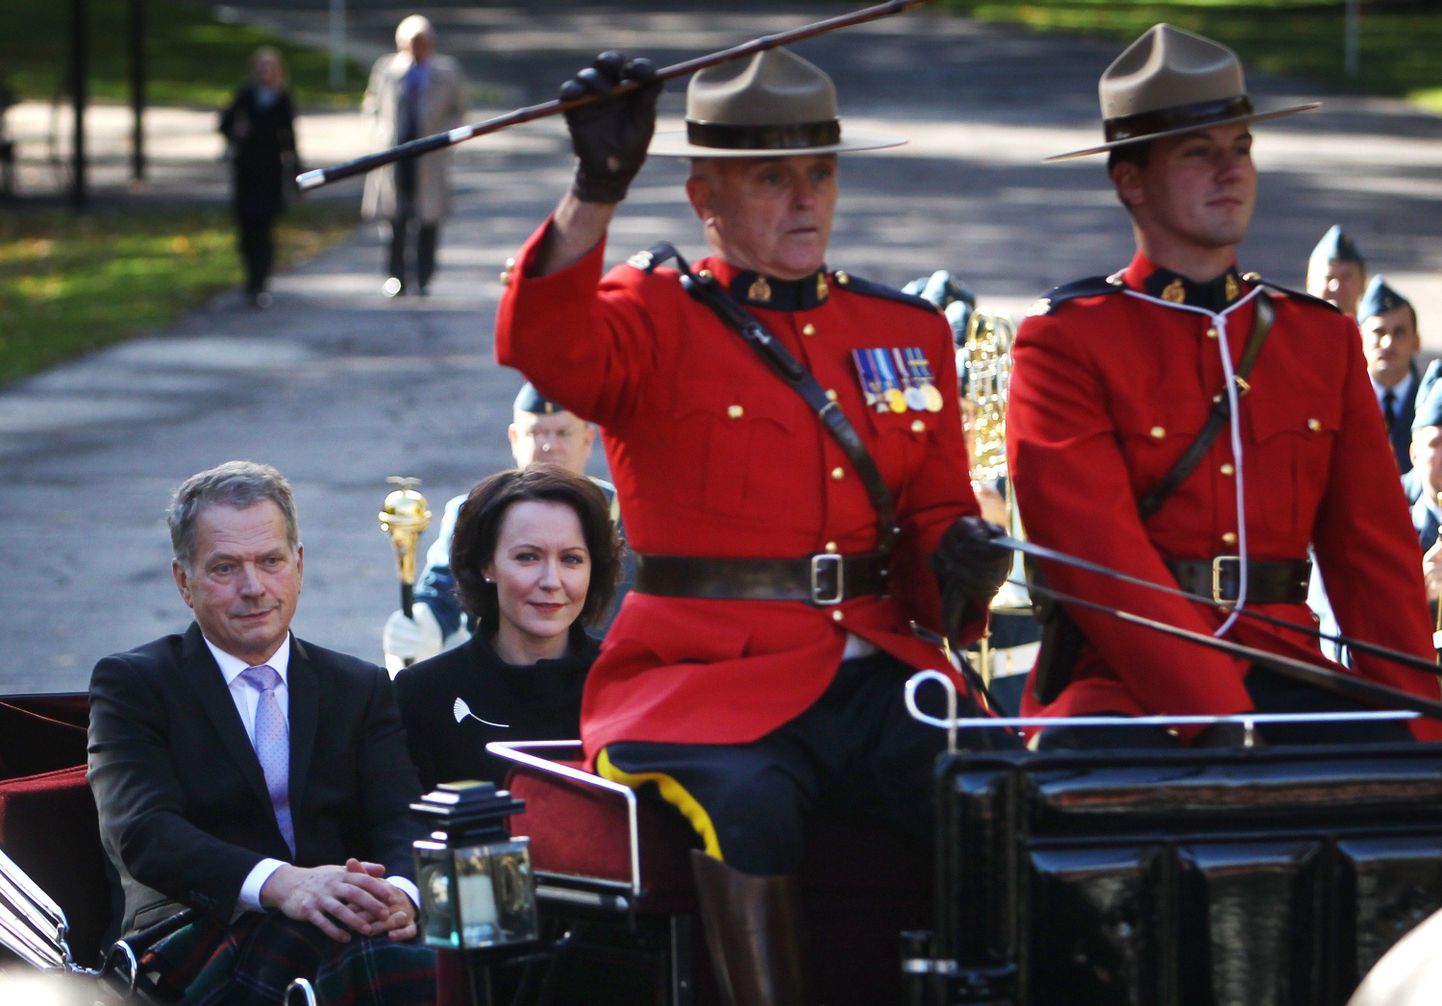 Soome president Sauli Niinistö koos abikaasa Jenni Haukioga riigivisiidil Kanadas tänavu oktoobris.